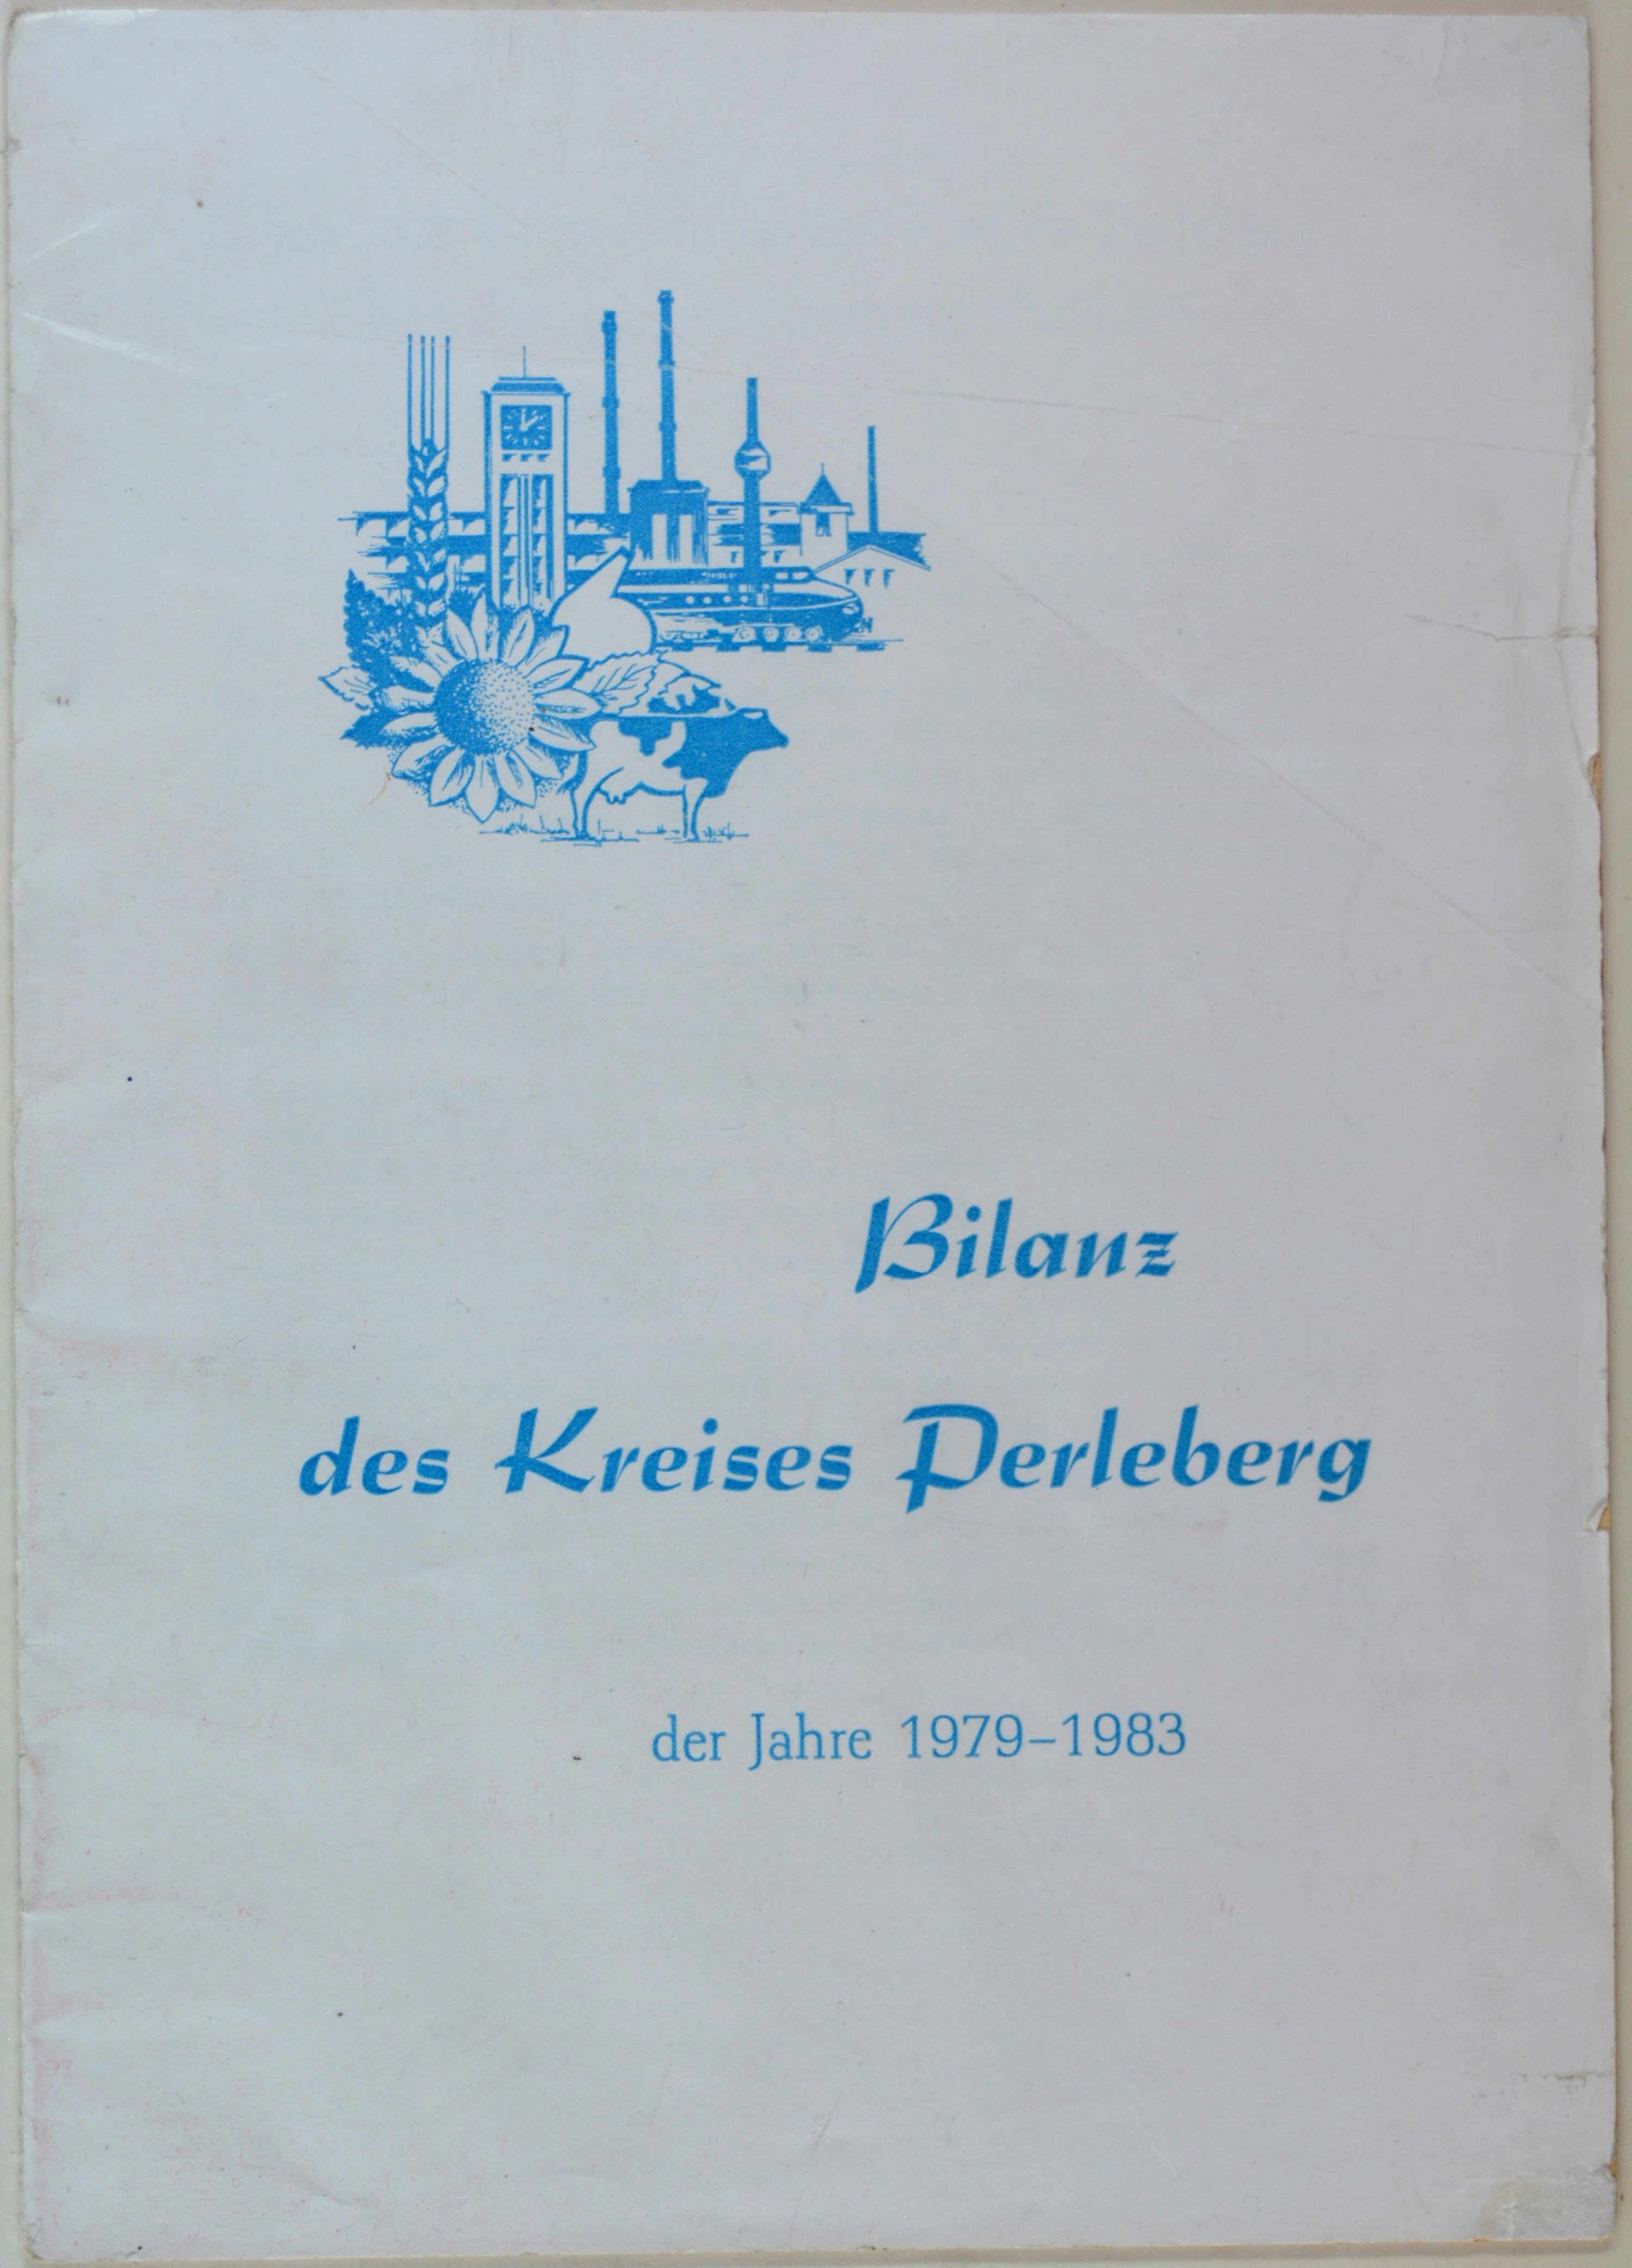 Broschüre: Bilanz des Kreises Perleberg der Jahre 1979-1983 (DDR Geschichtsmuseum im Dokumentationszentrum Perleberg CC BY-SA)